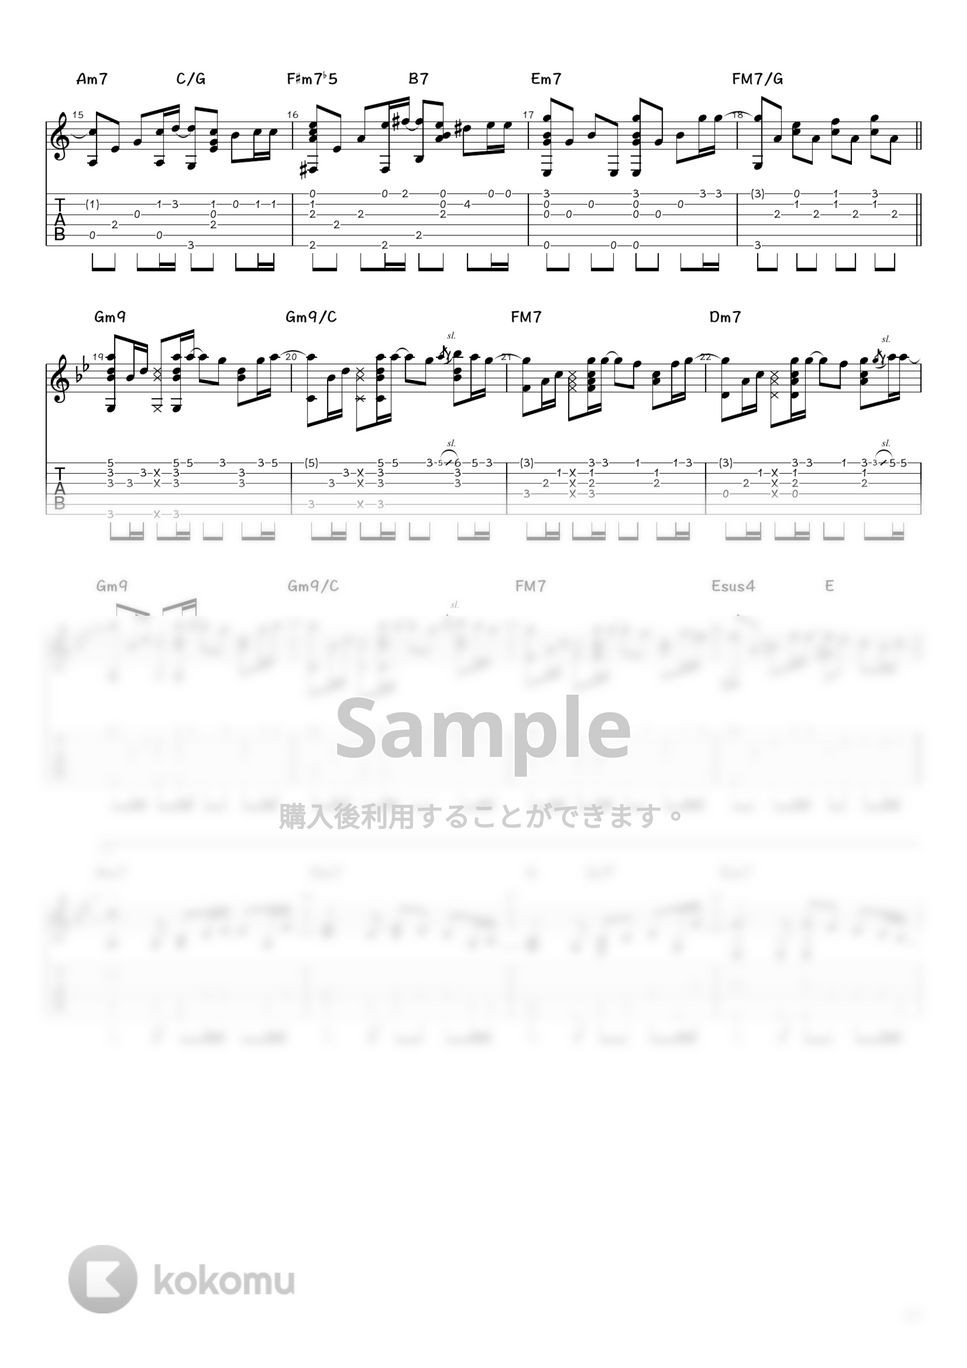 薬師丸ひろ子 - Woman”Wの悲劇”より (ソロギター / タブ譜) by 井上さとみ